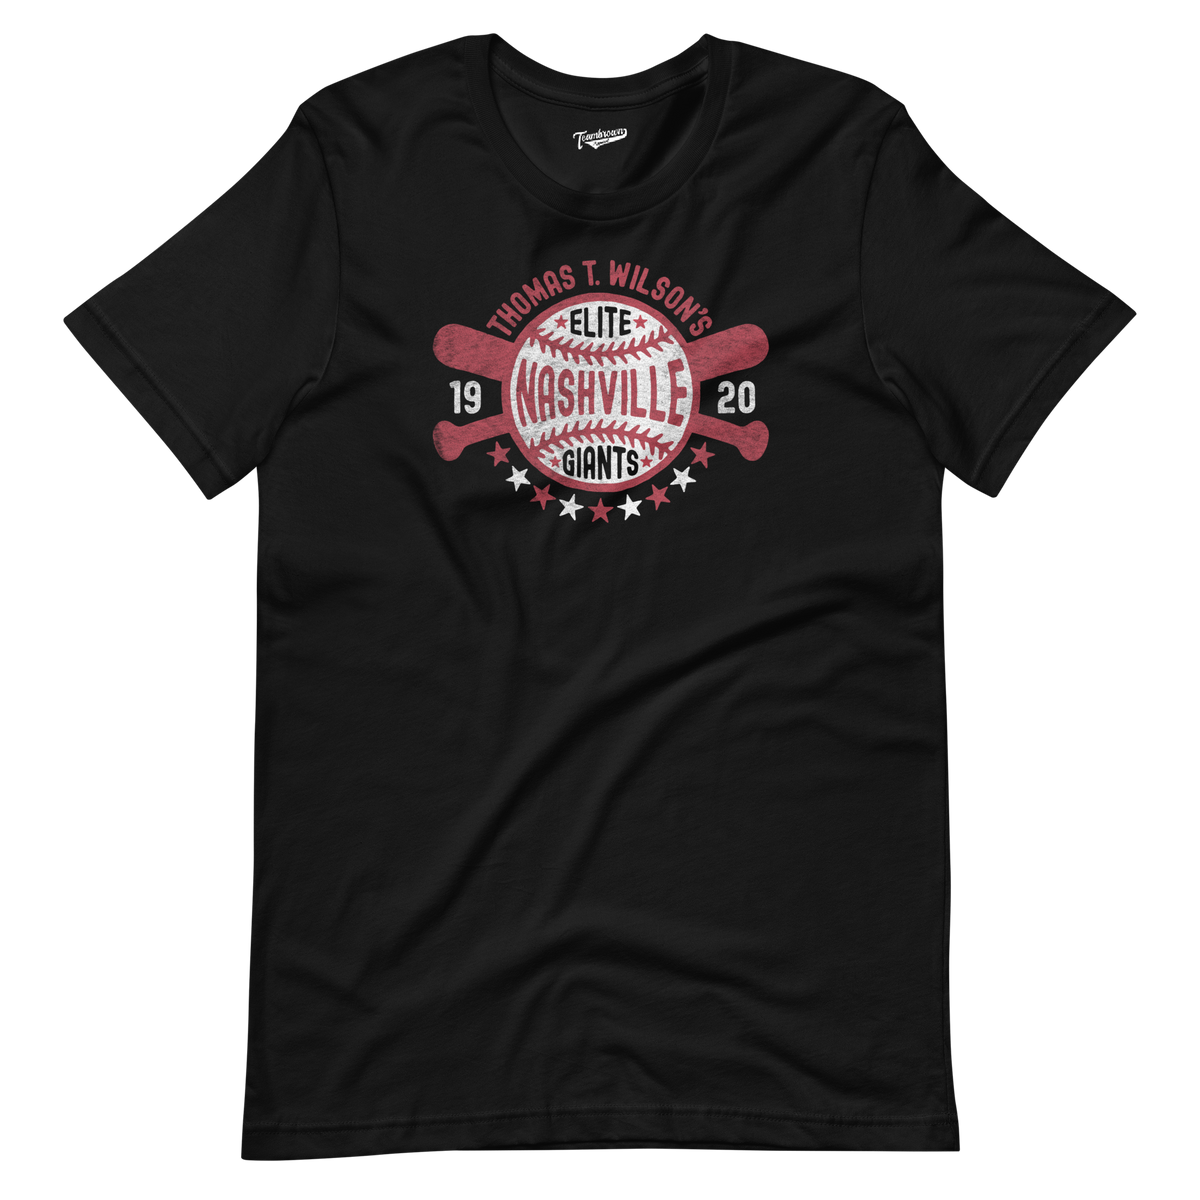 1920 Nashville Elite Giants - Unisex T-Shirt